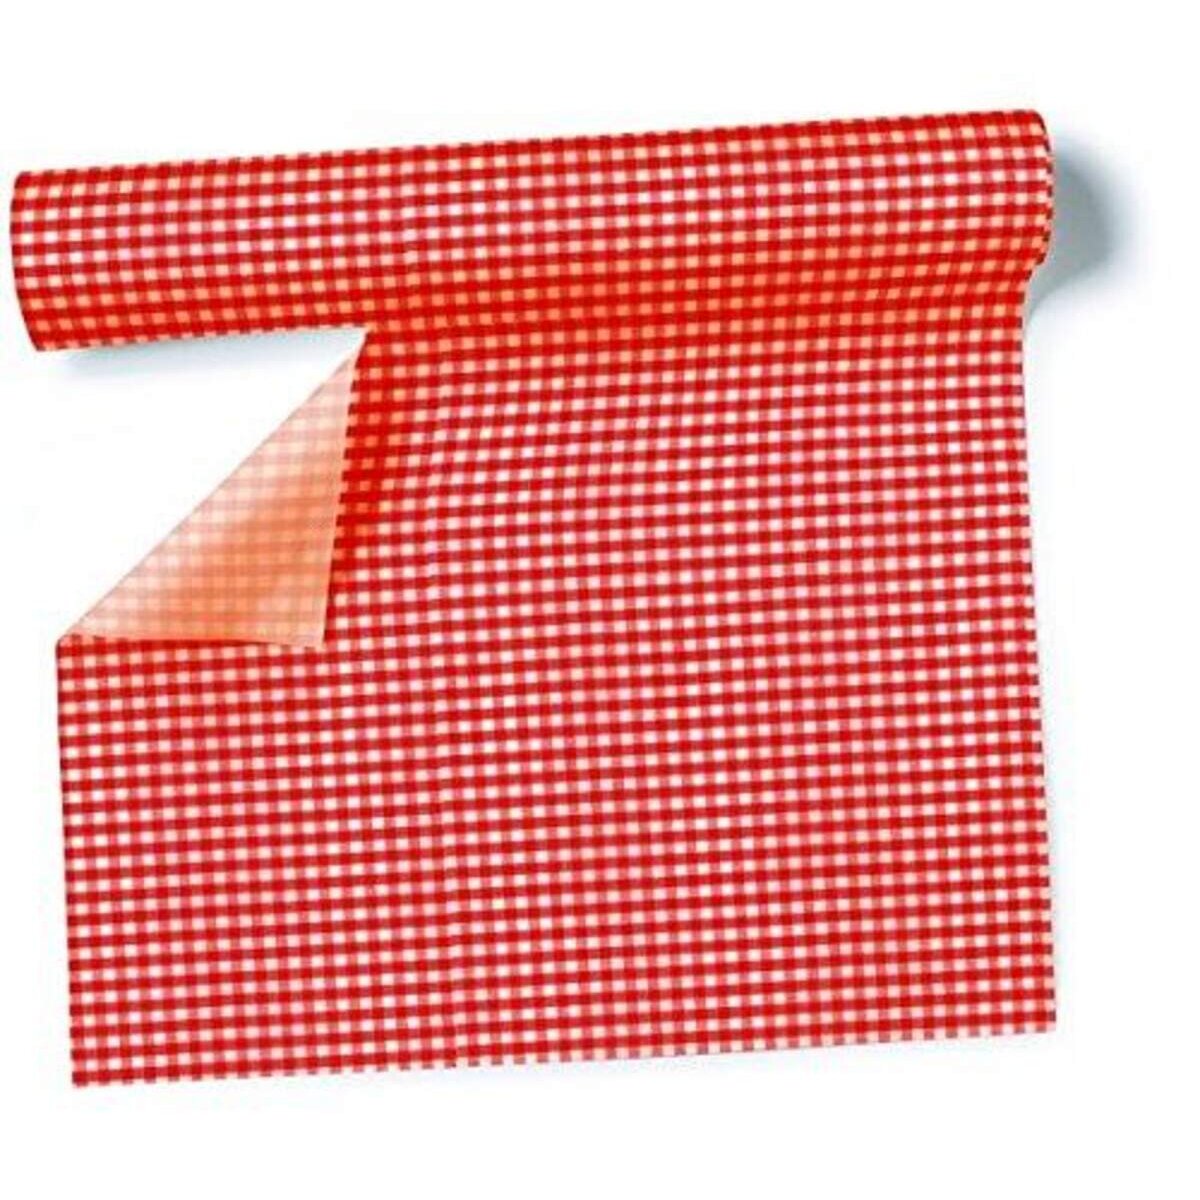 Paper+Design Tischläufer Biertisch, vichy rot, kariert, 40 cm x 3,6m